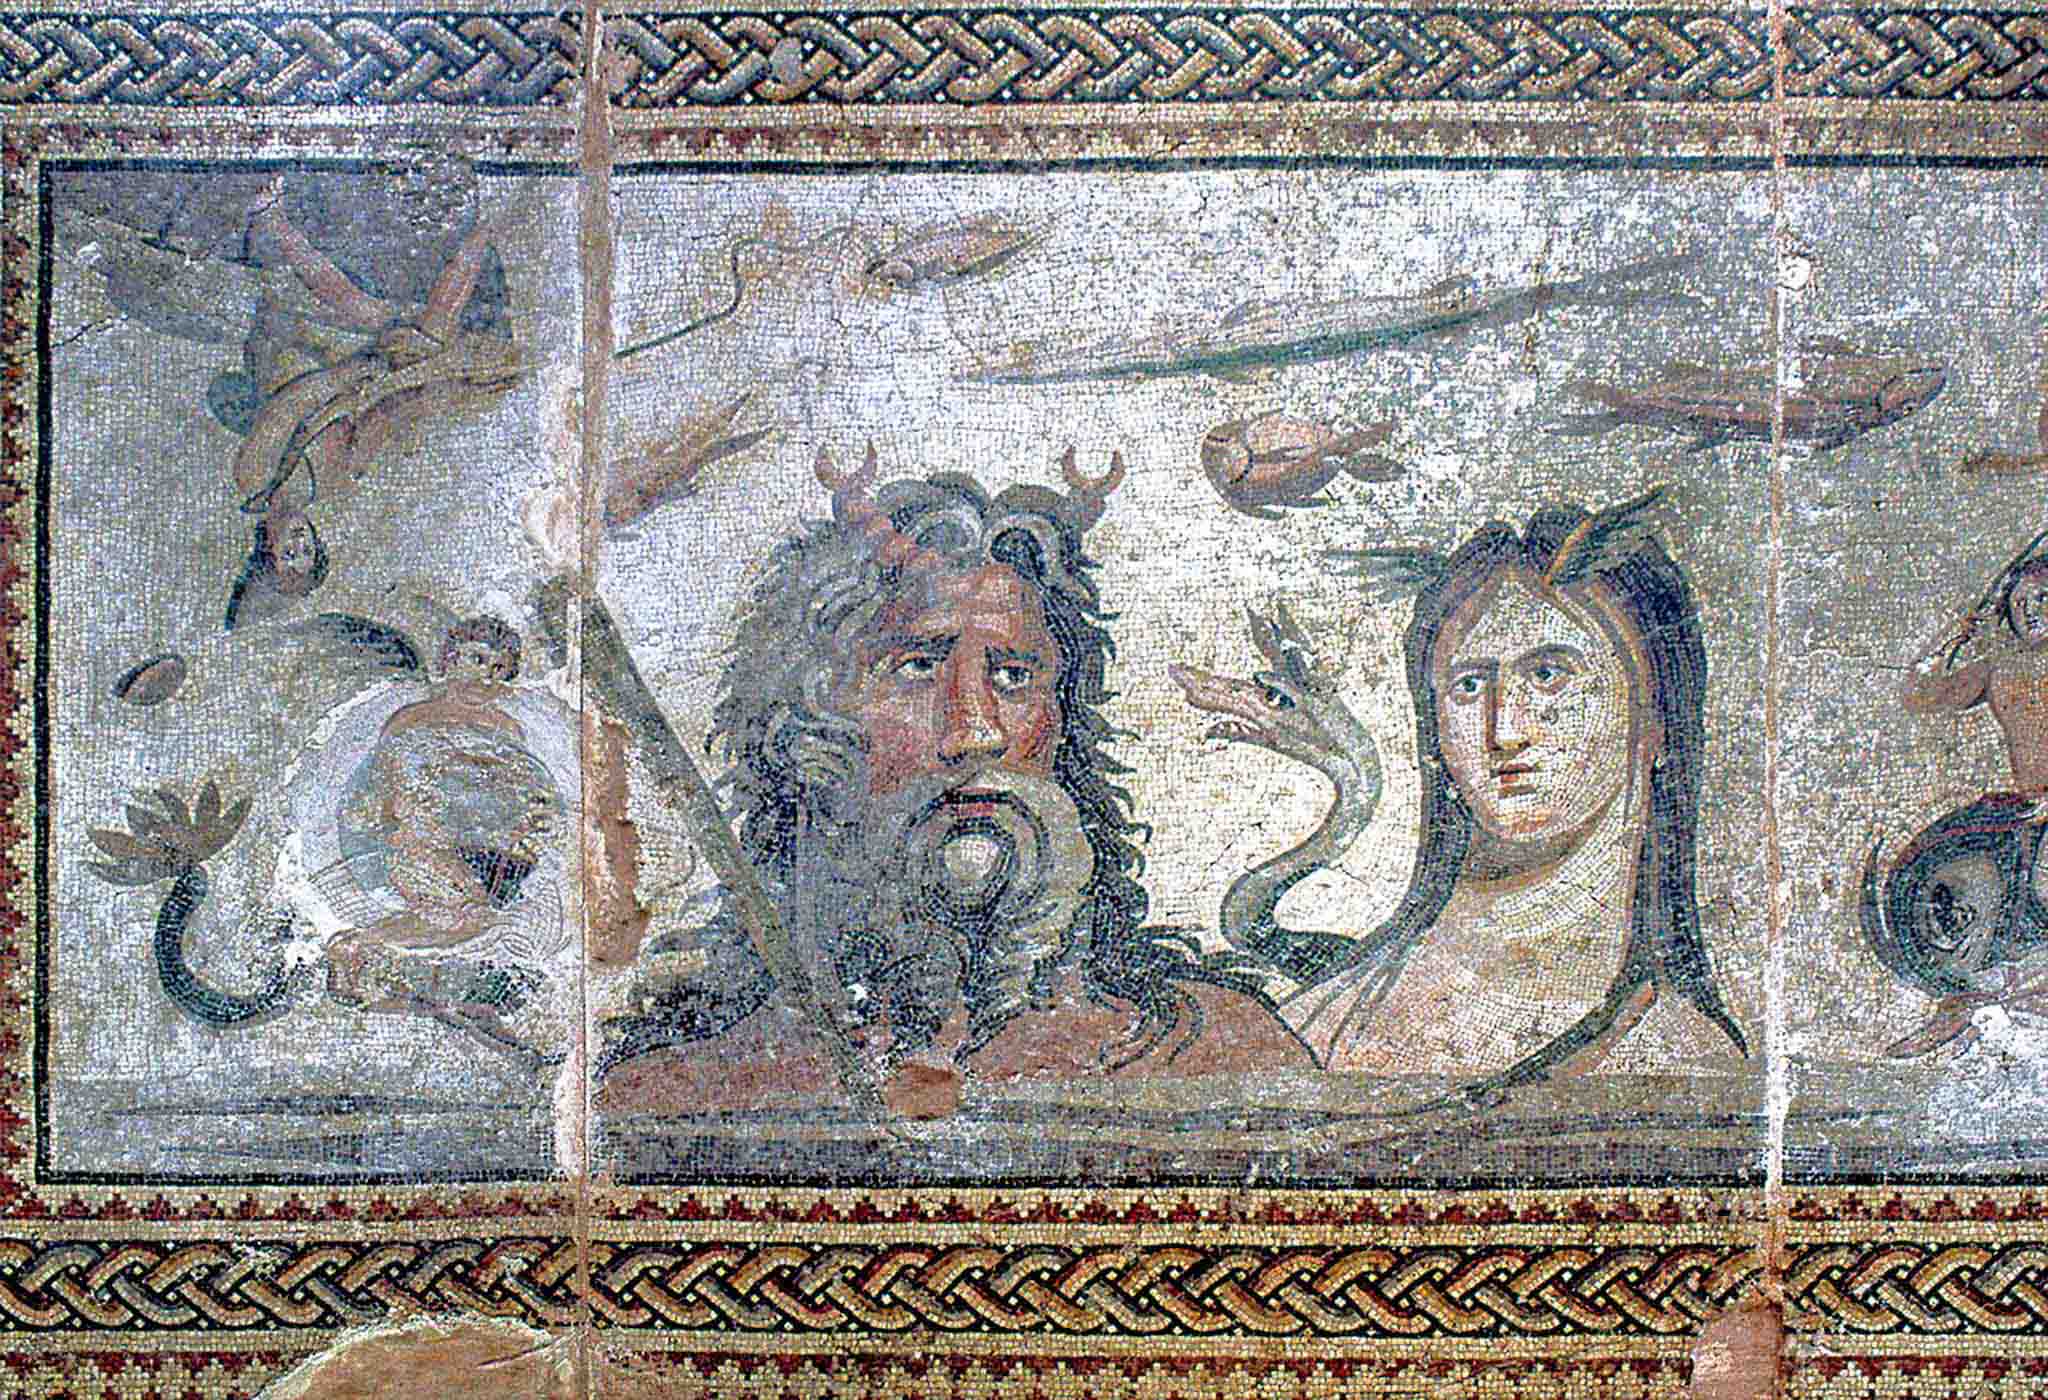 Thần Oceanus, vị Thần của tất cả các Thần sông, và vợ ngài, nữ Thần Thetys. (Ảnh: Dosseman/CC BY-SA 4.0)